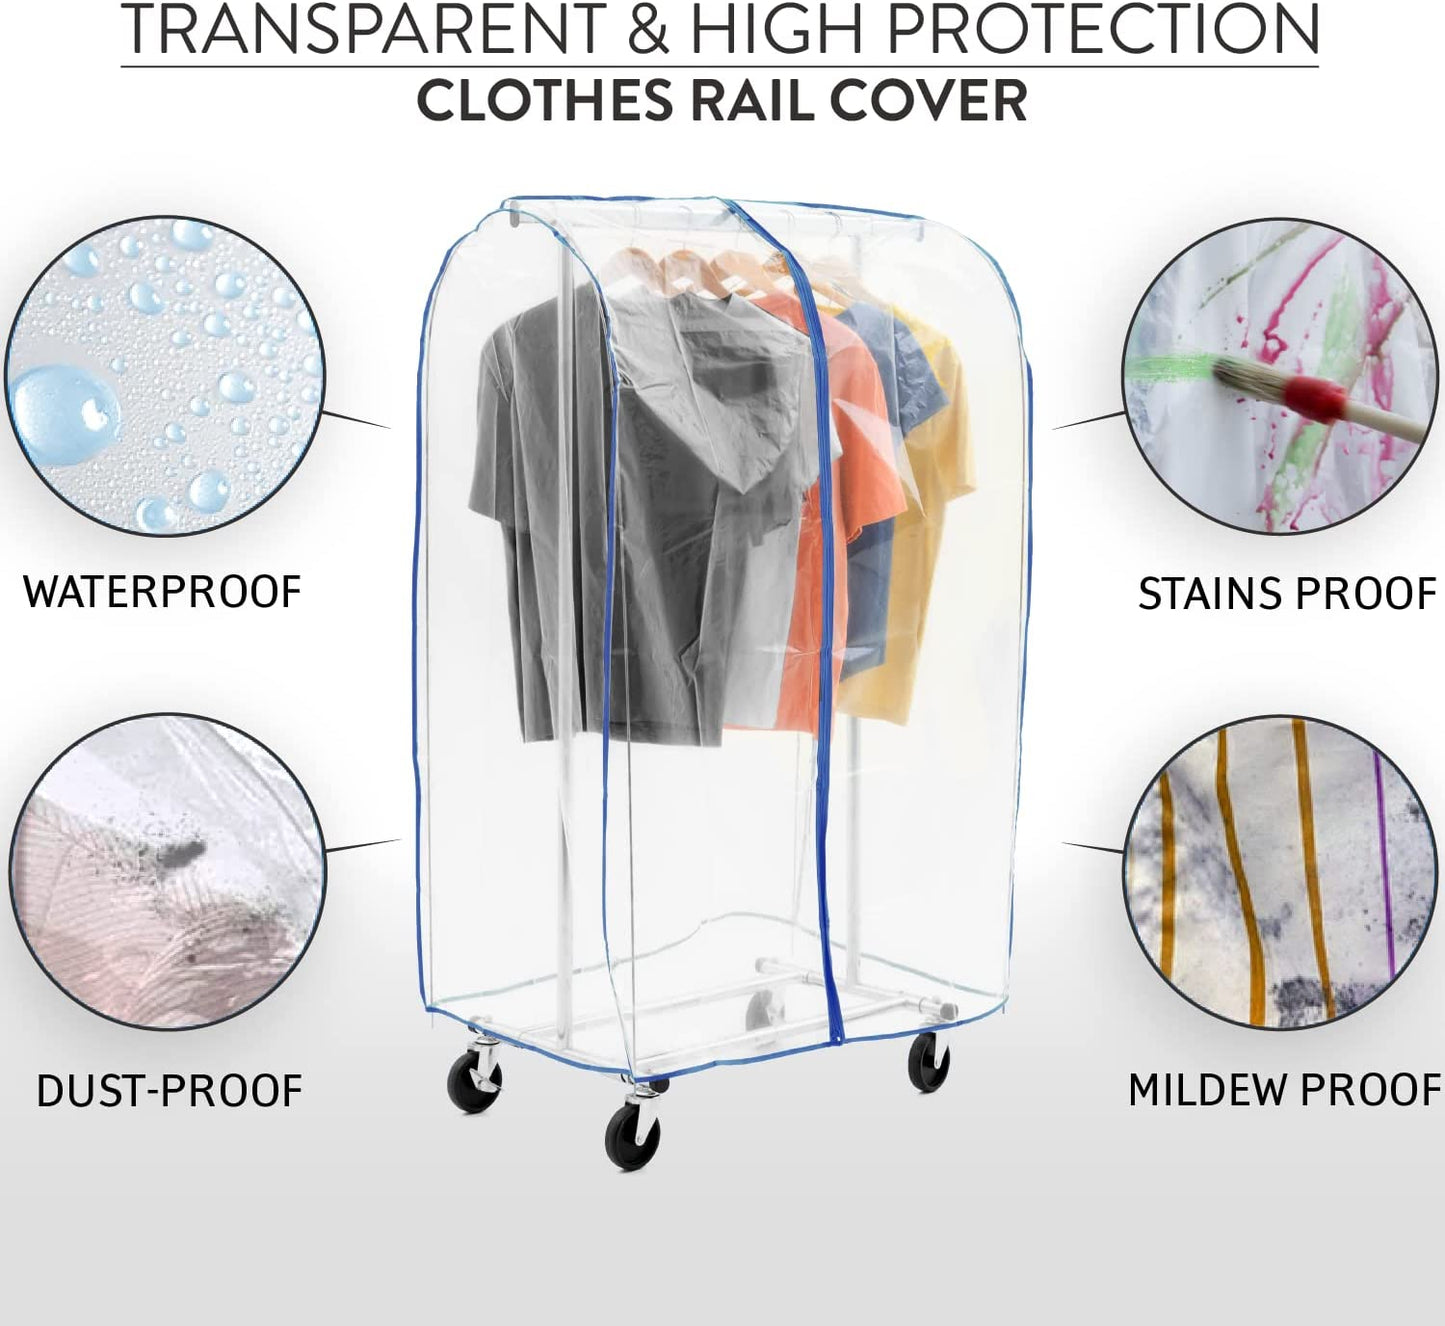 Tatkraft Screen - Housse de Protection pour Portant à Vêtements, Plastique Waterproof Transparent, Ouverture et Fermeture Faciles, L96 cm